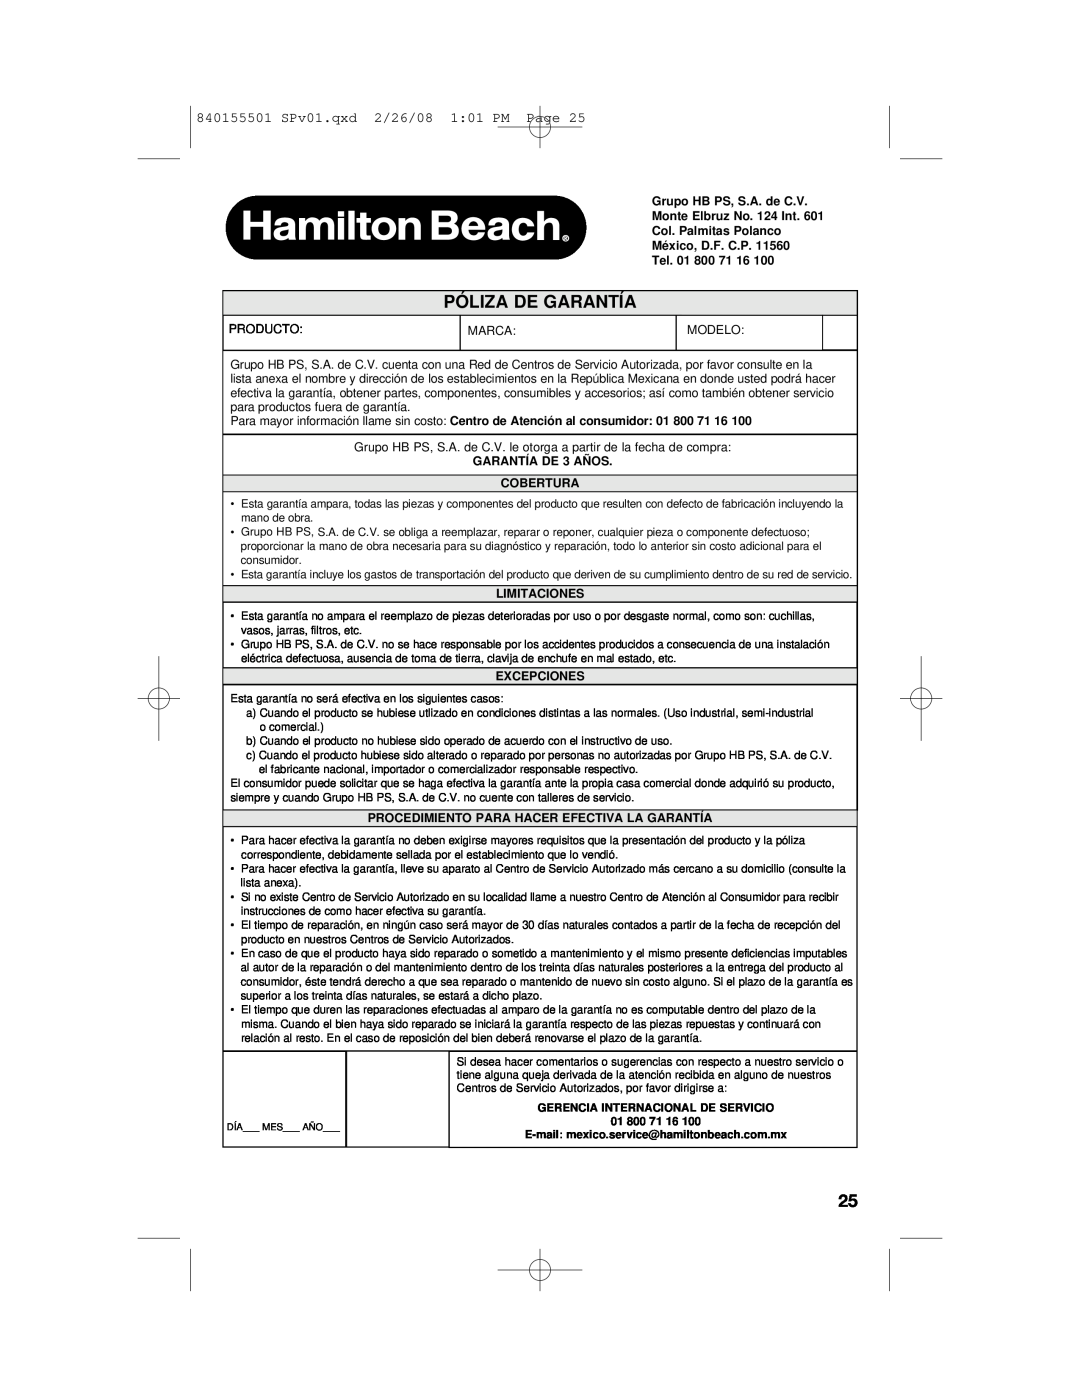 Hamilton Beach 54616C manual Póliza De Garantía, 840155501 SPv01.qxd 2/26/08 101 PM Page, GARANTÍA DE 3 AÑOS COBERTURA 